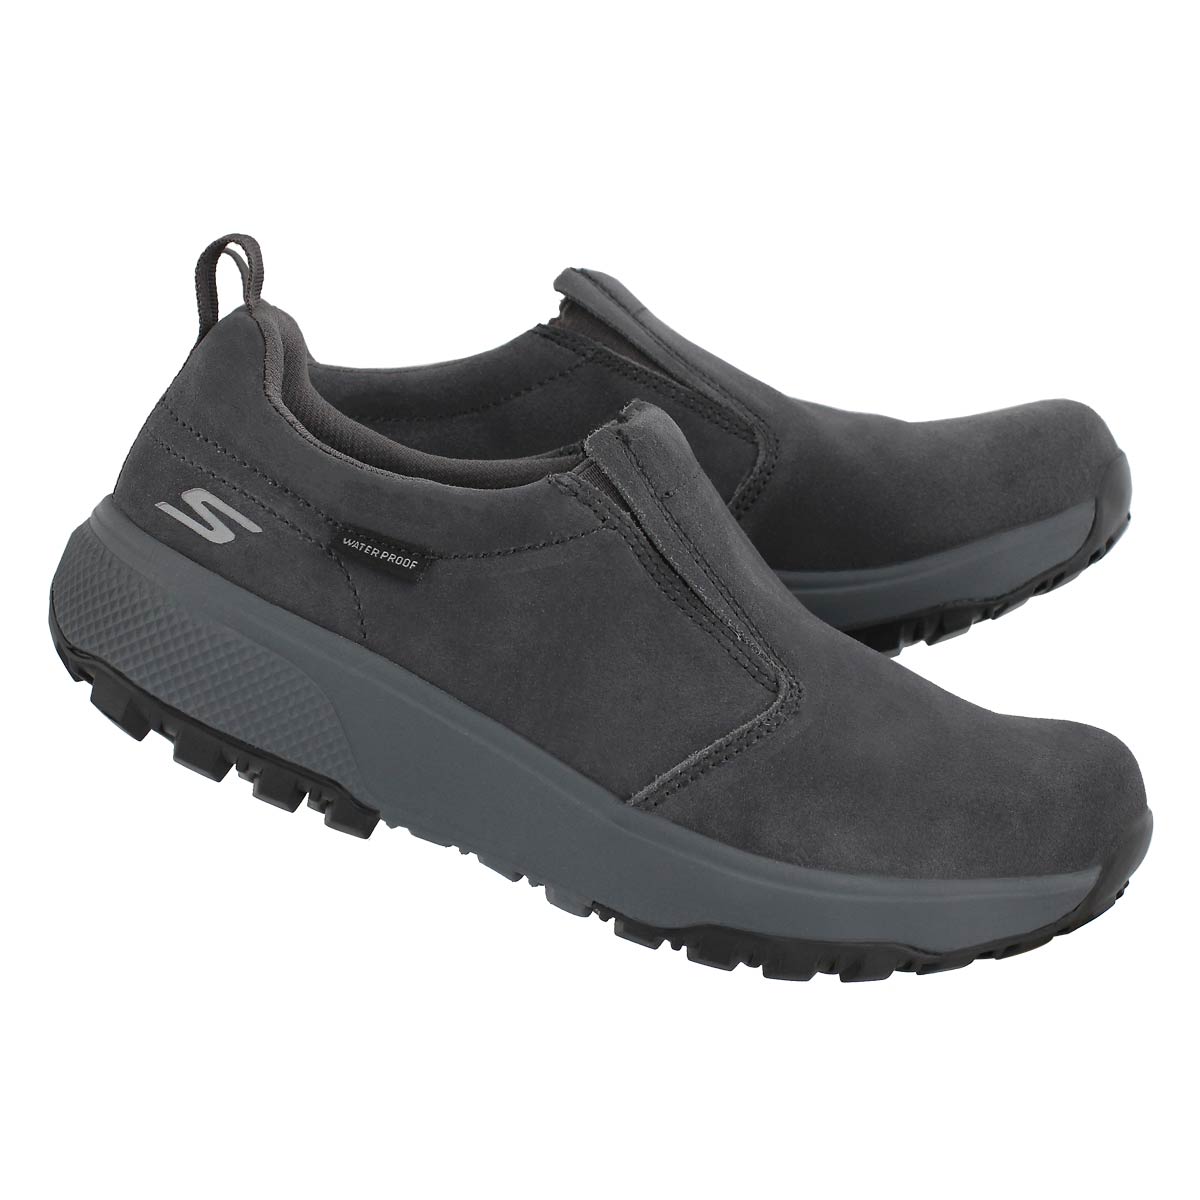 Skechers Women's Outdoors Ultra Waterproof Slip On Shoe | eBay